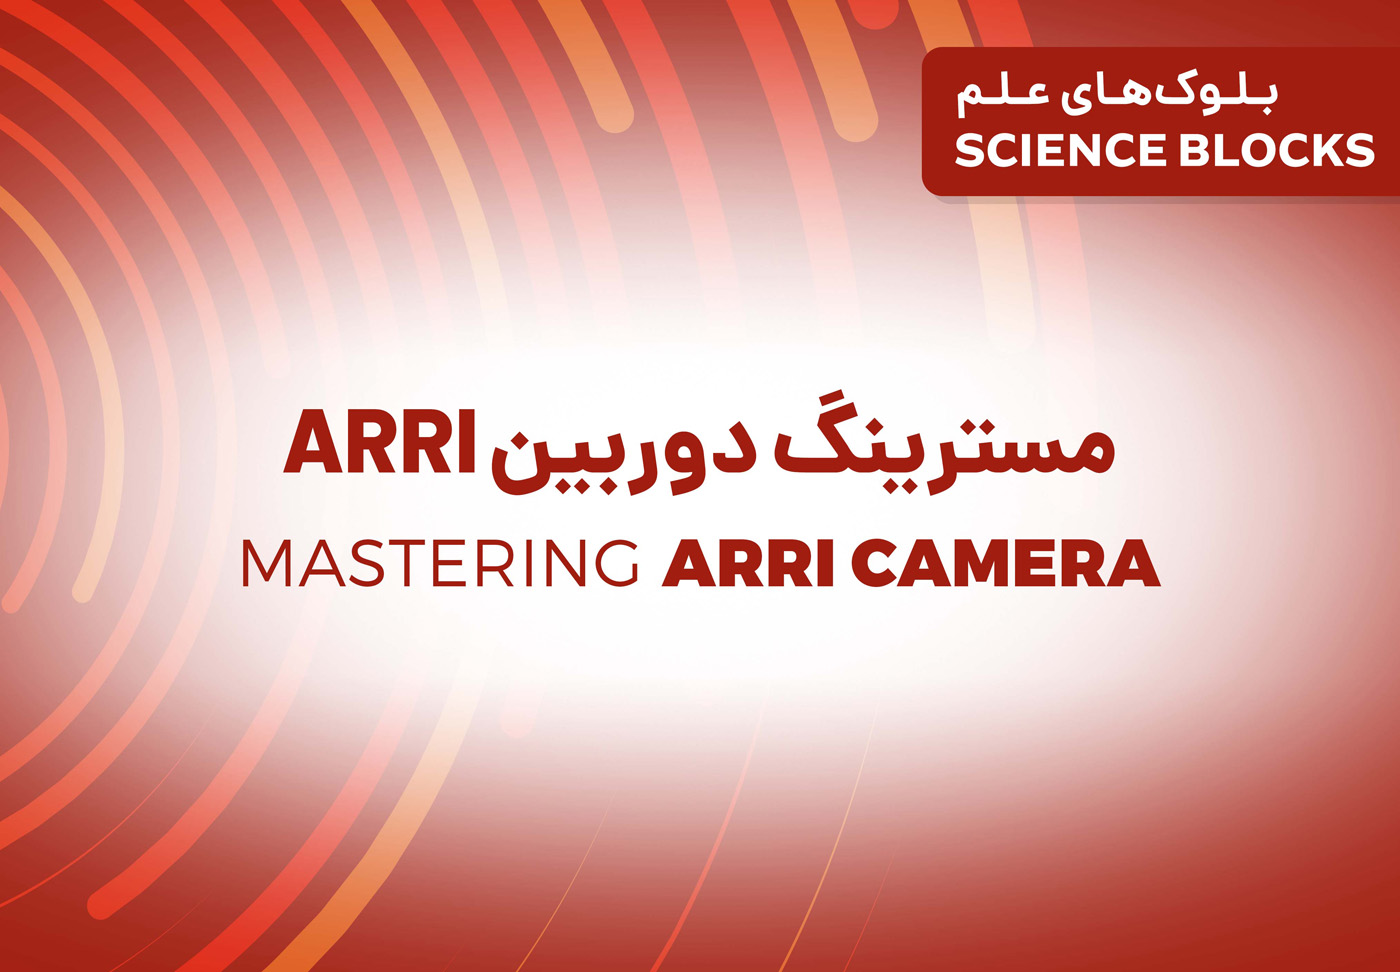 بلوک علم: مسترینگ ويژگی های دوربین ARRI